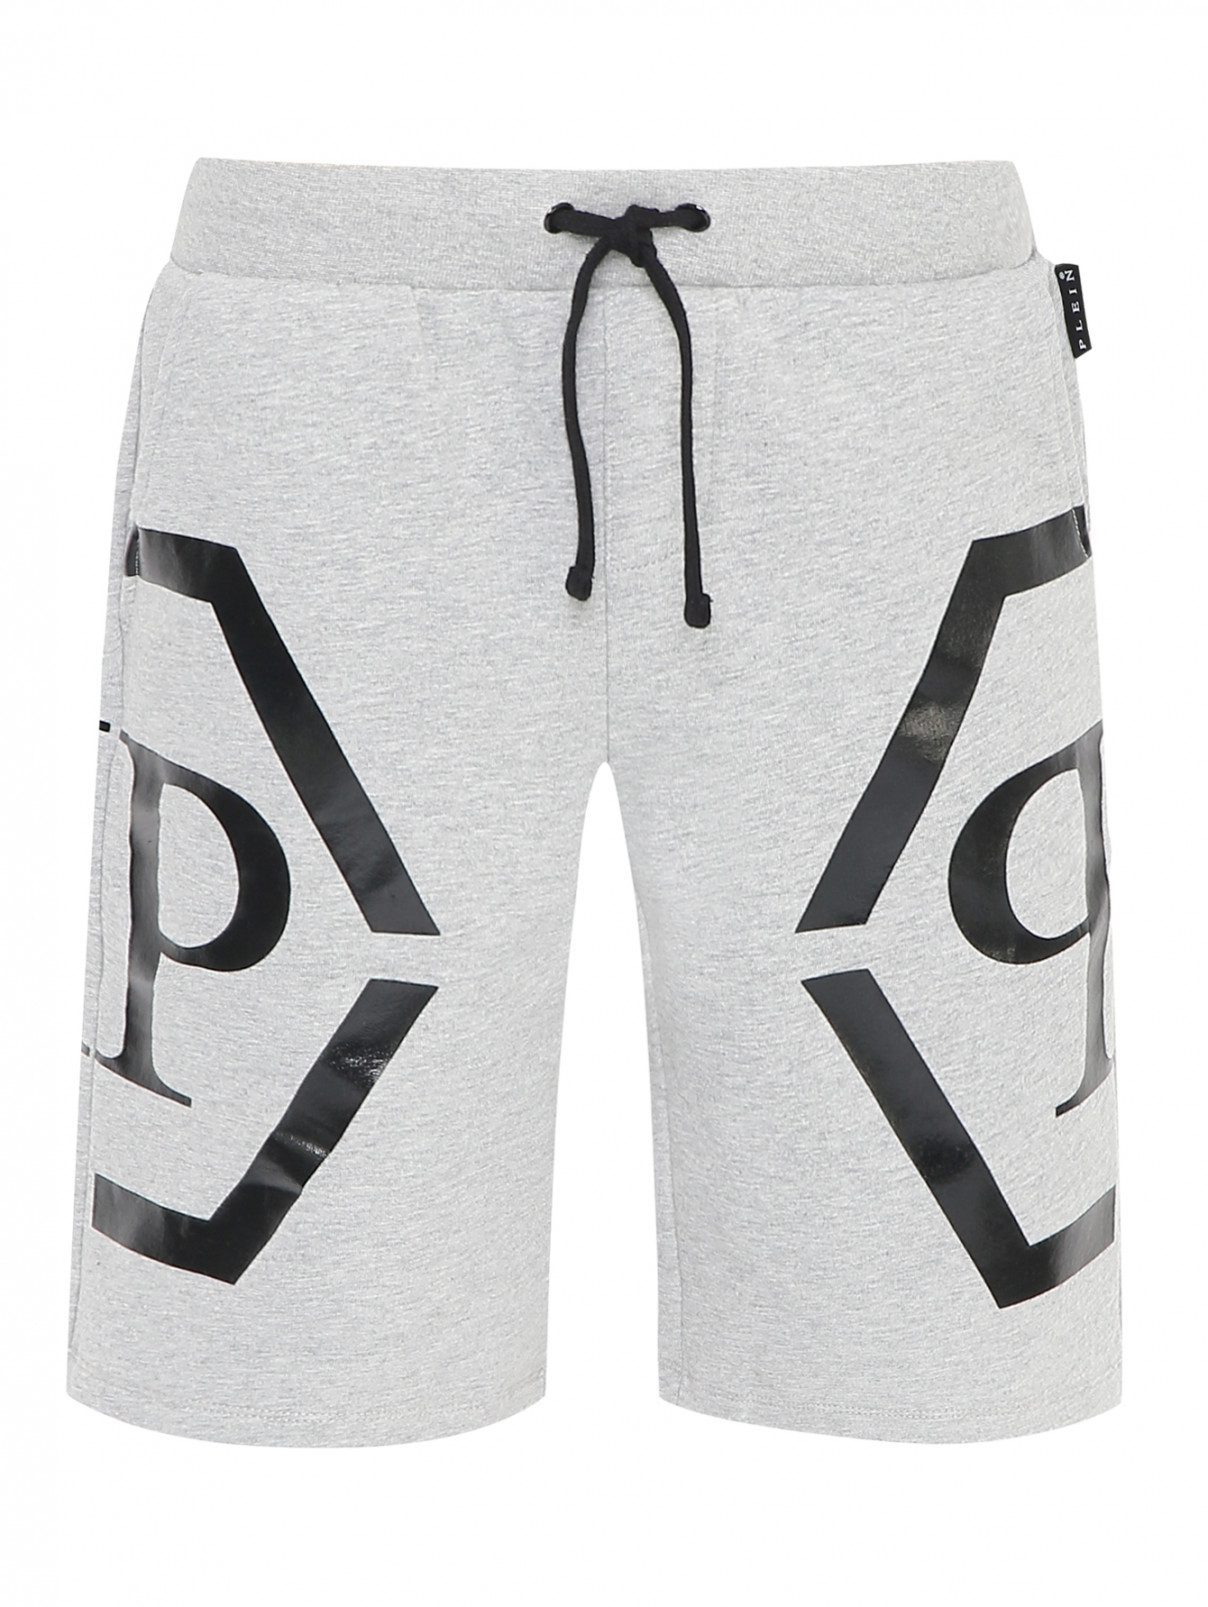 Хлопковые шорты с принтом Philipp Plein  –  Общий вид  – Цвет:  Серый